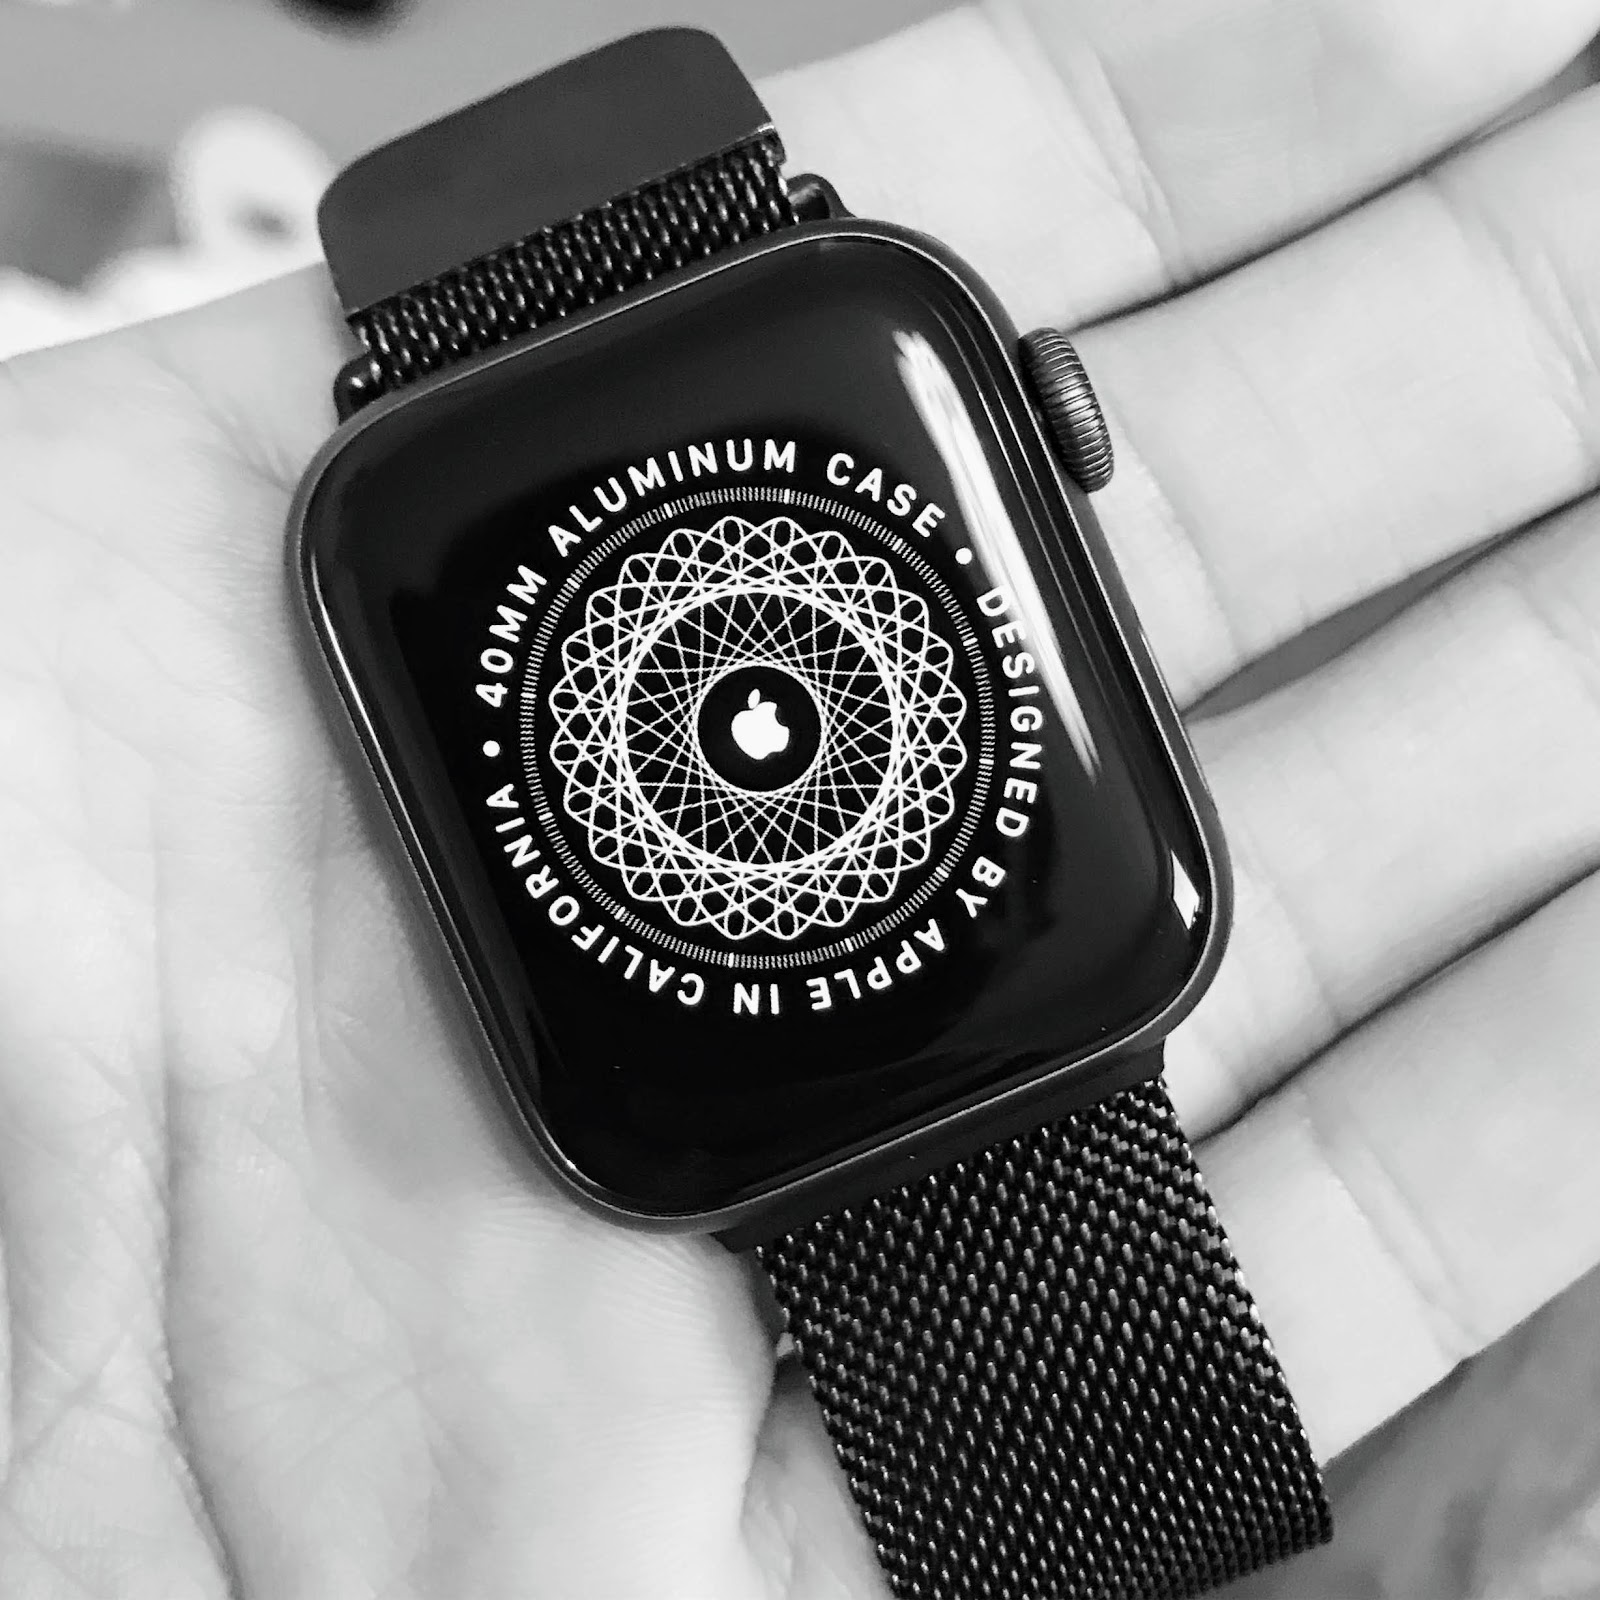 Apple Applewatch ガジェット レビュー アップルウォッチseries4に買い替え 日常使用での違いについて